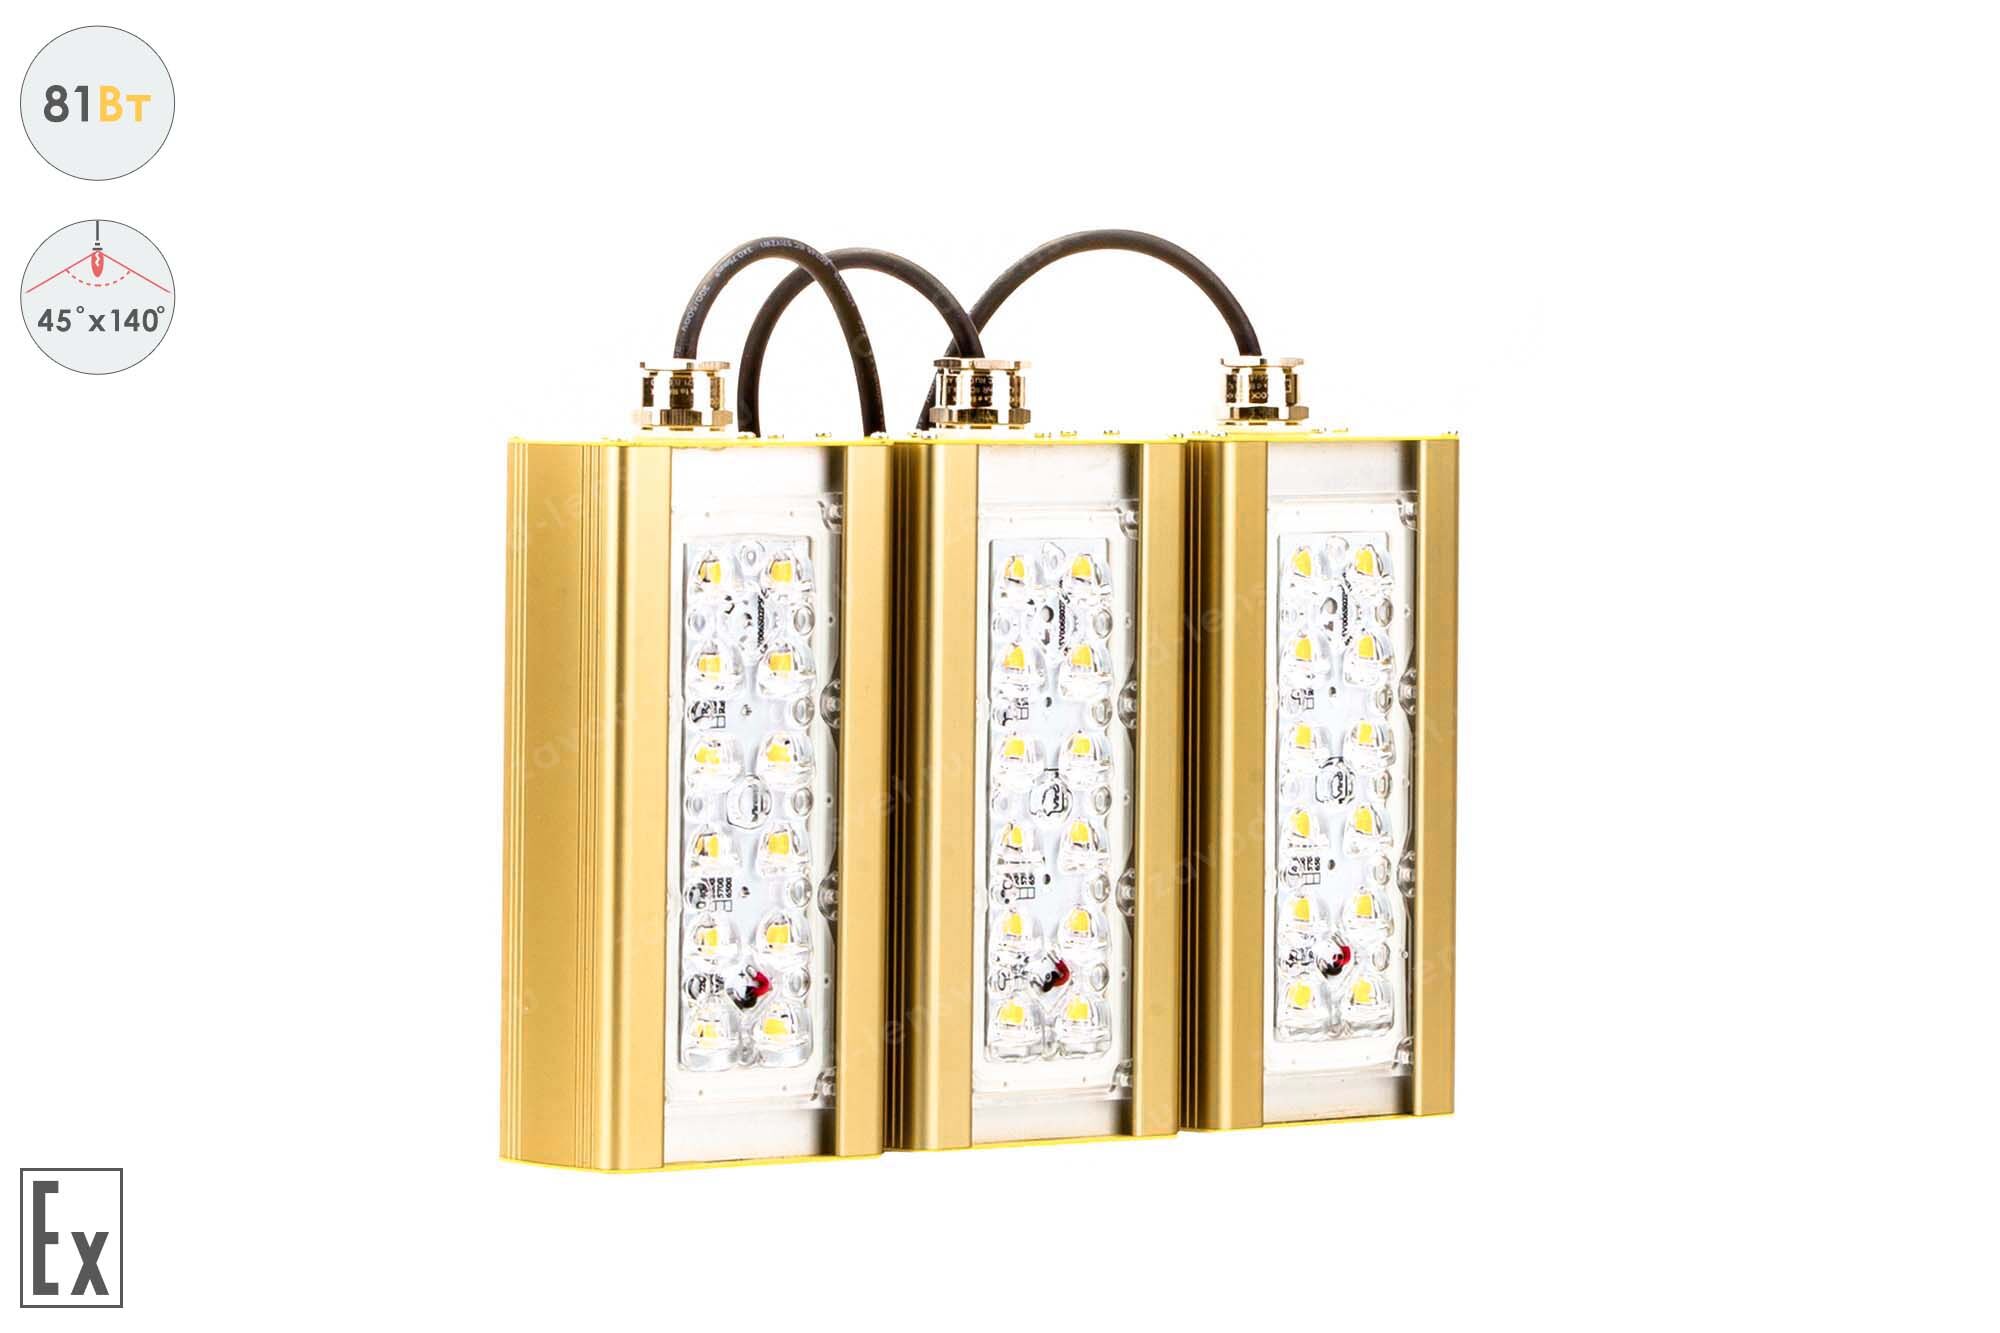 Светодиодный светильник Магистраль Взрывозащищенная GOLD, консоль K-3, 81 Вт, 45X140°